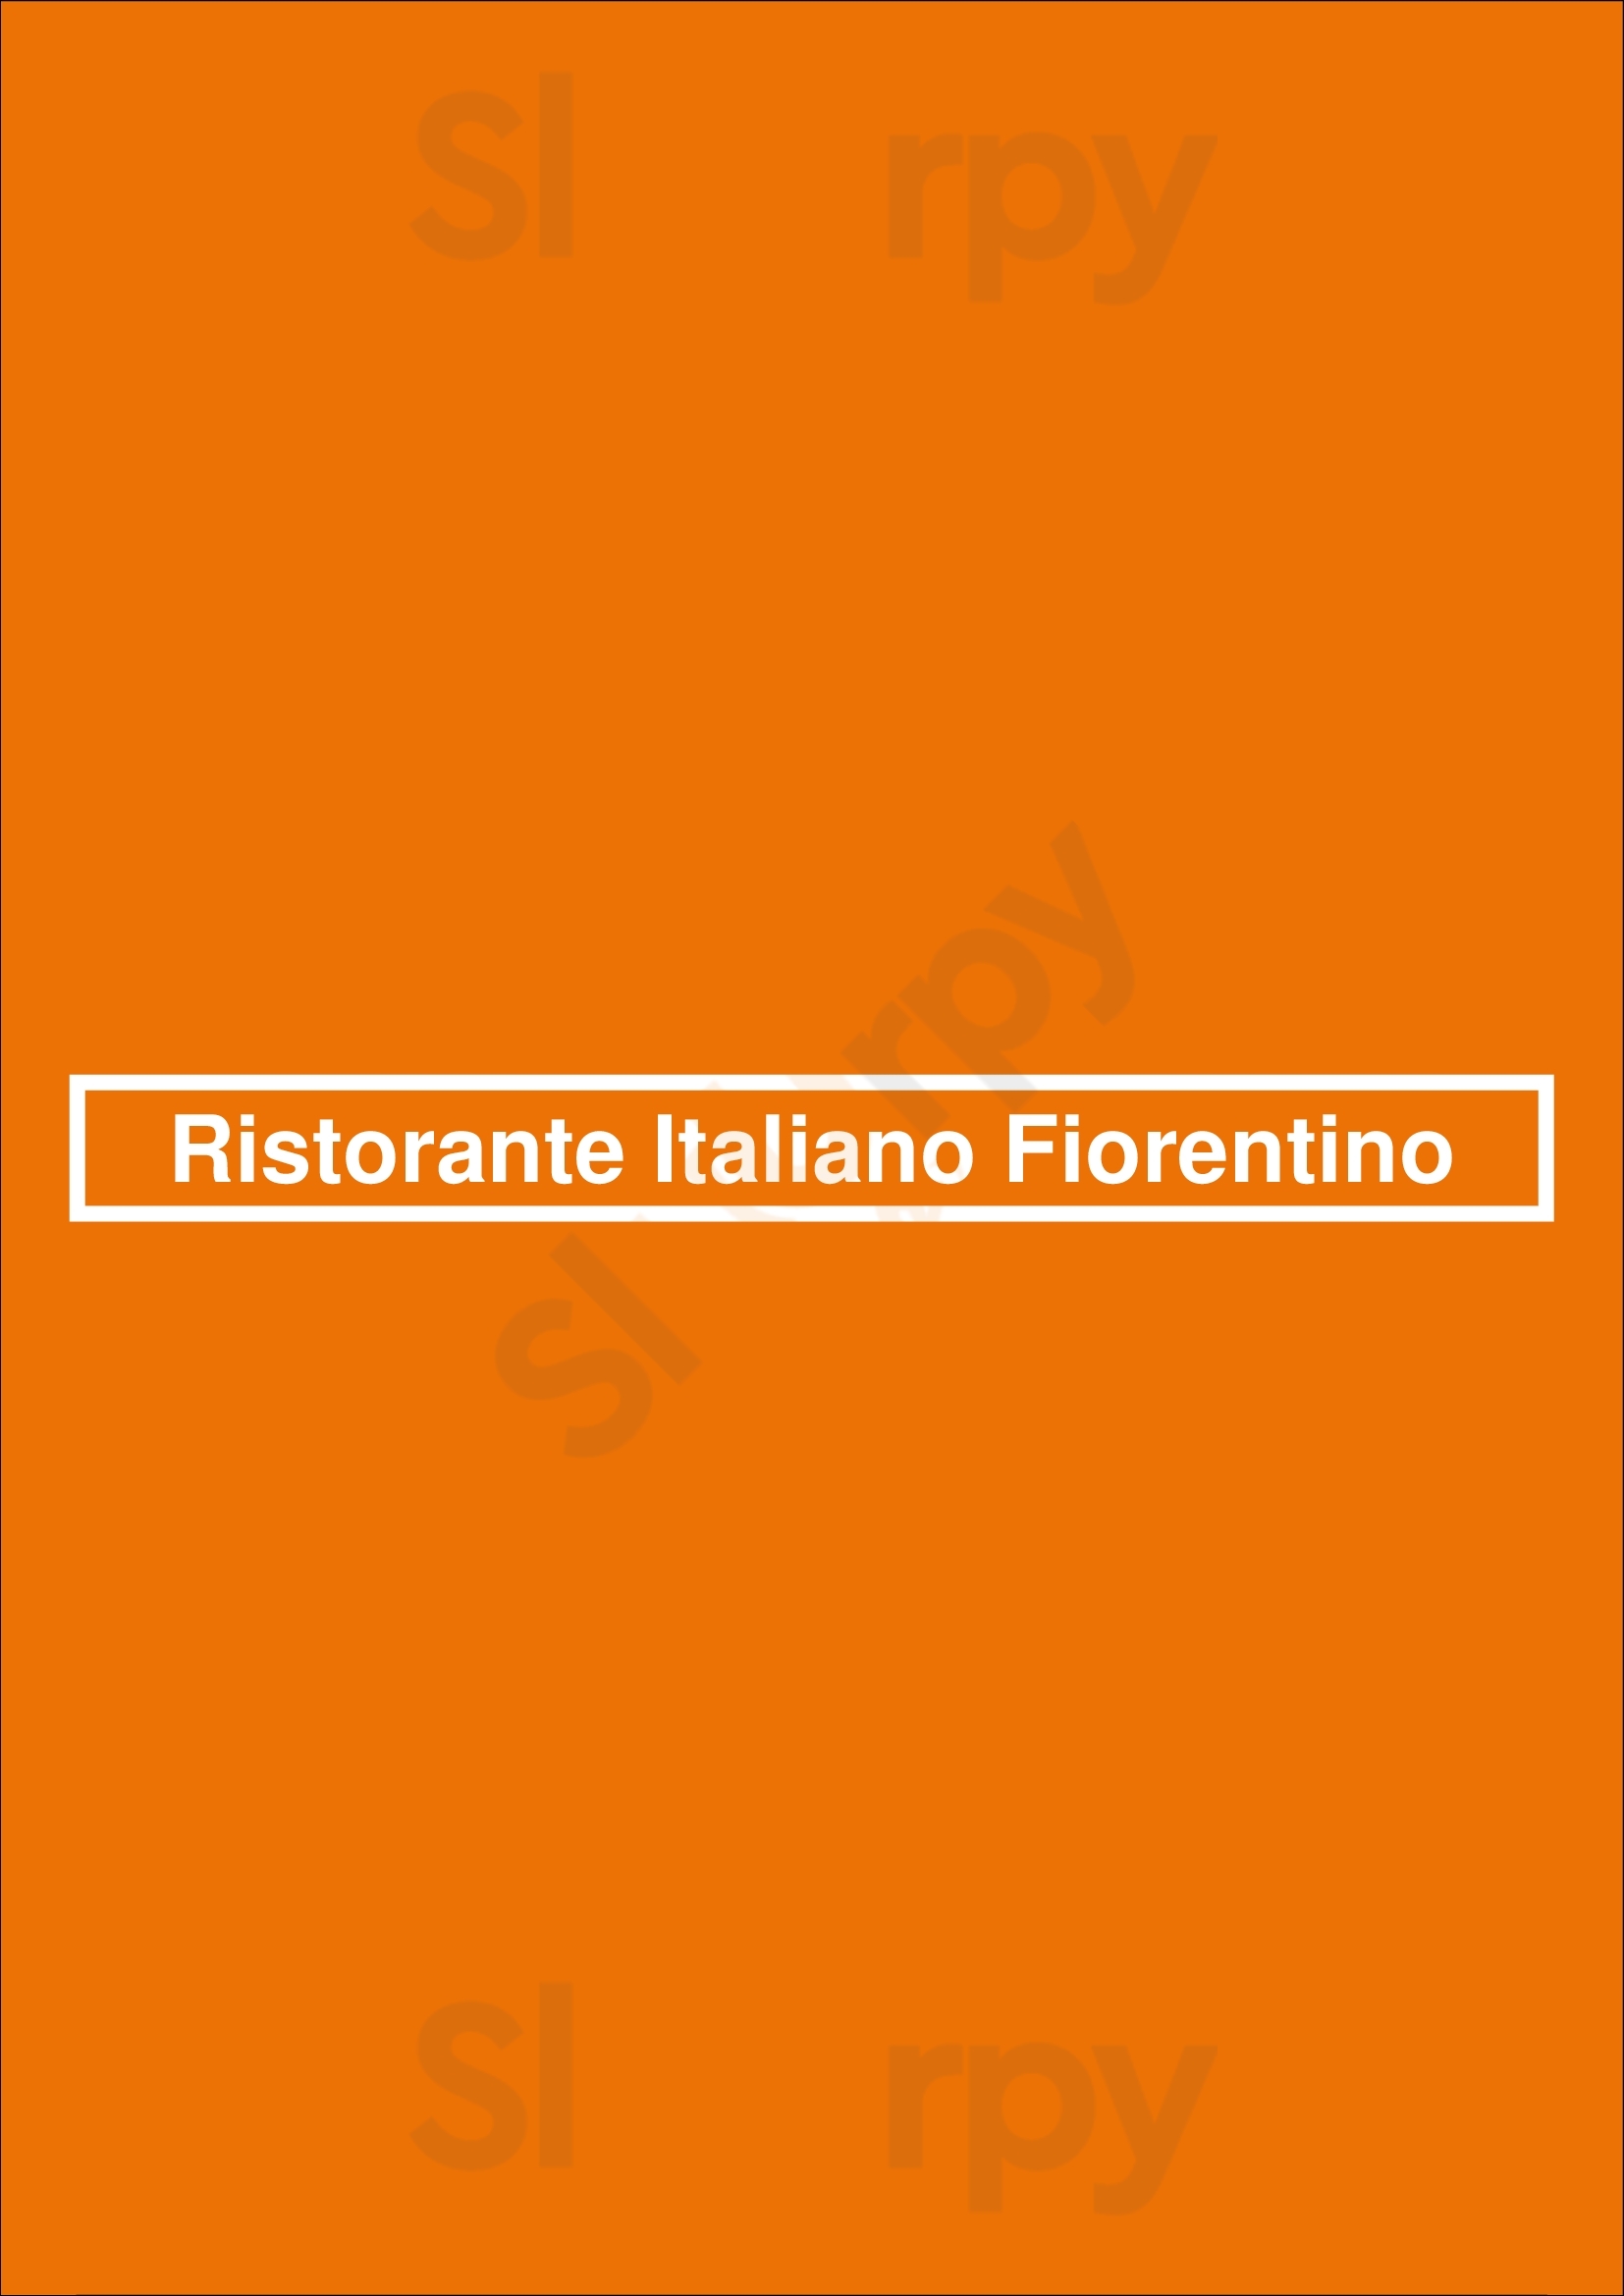 Ristorante Italiano Fiorentino Amsterdam Menu - 1